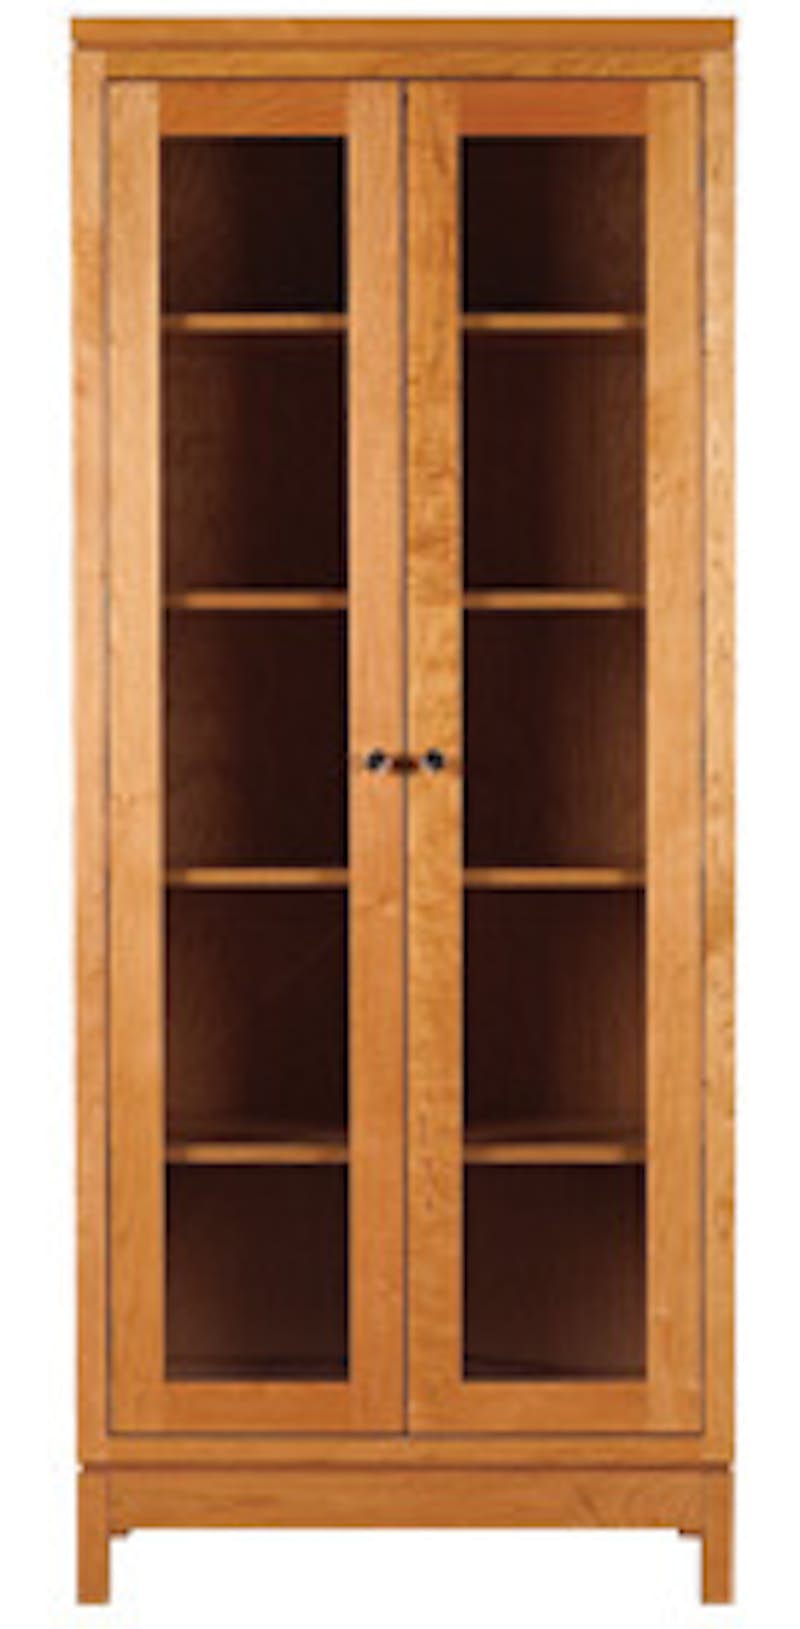 F133 Franklin 72" Tall Glass Door Bookcase